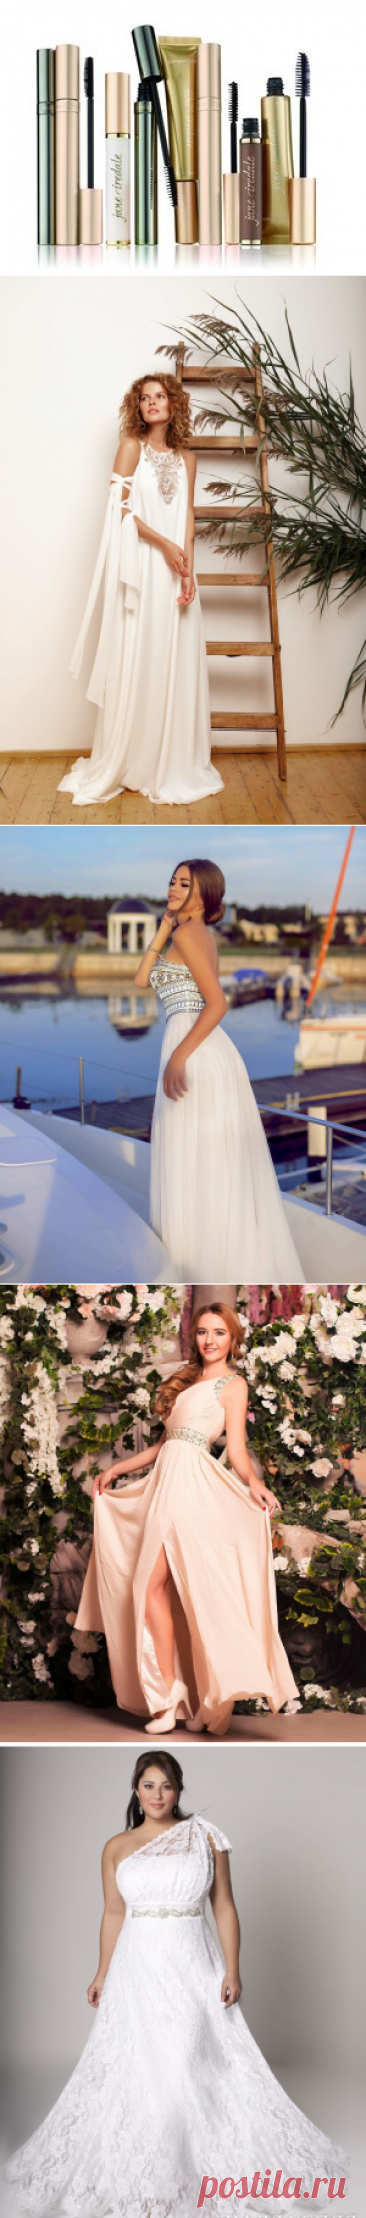 Греческое платье: 12 способов подчеркнуть женственность и элегантность дамы | Новости моды